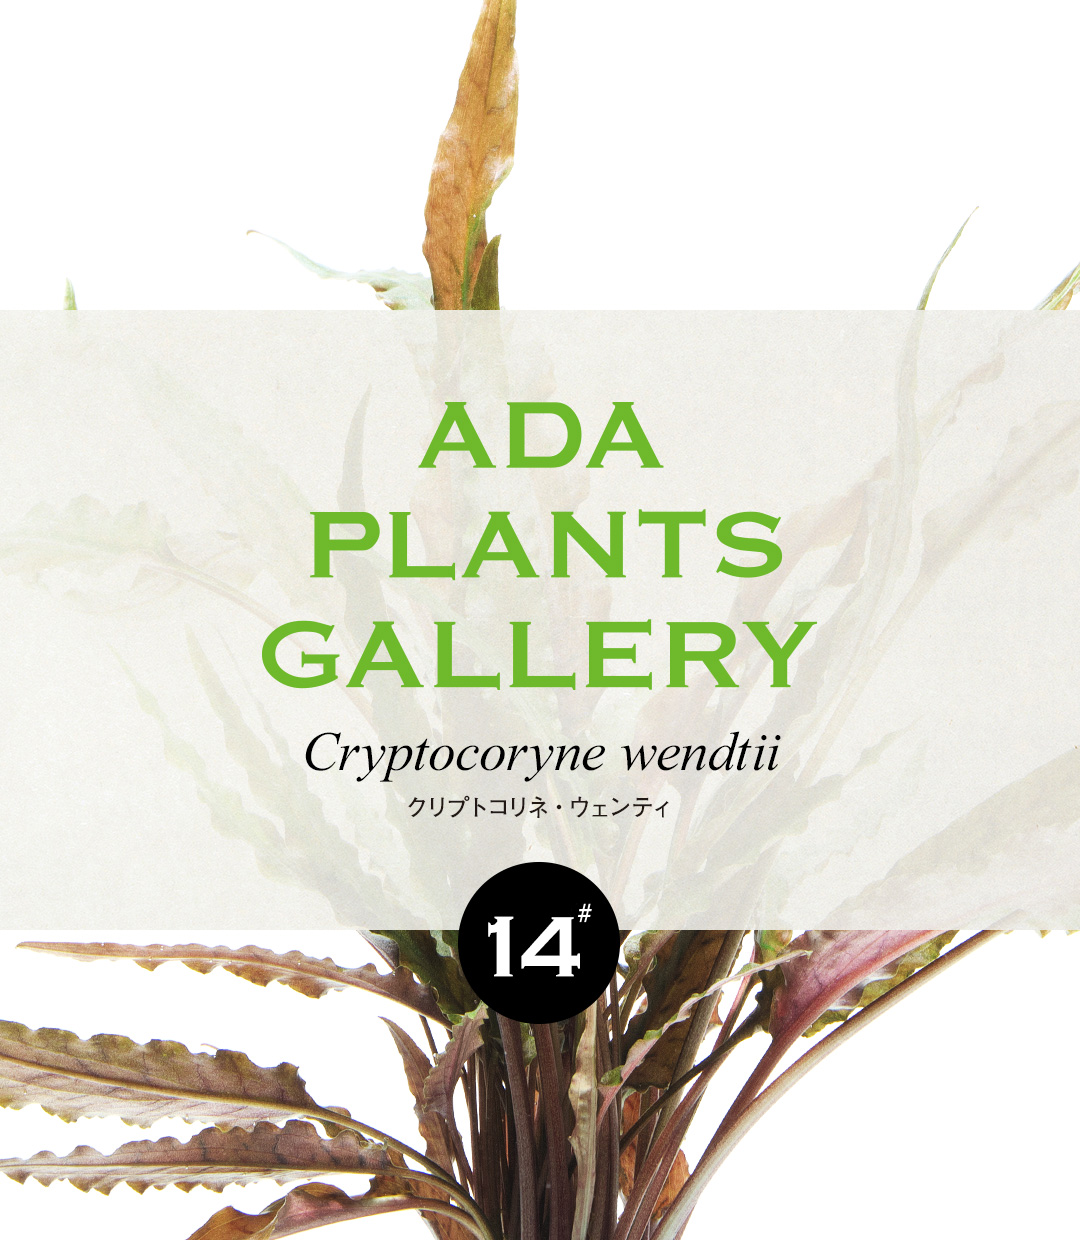 ADA PLANTS GALLERY #14 Cryptocoryne wendtii